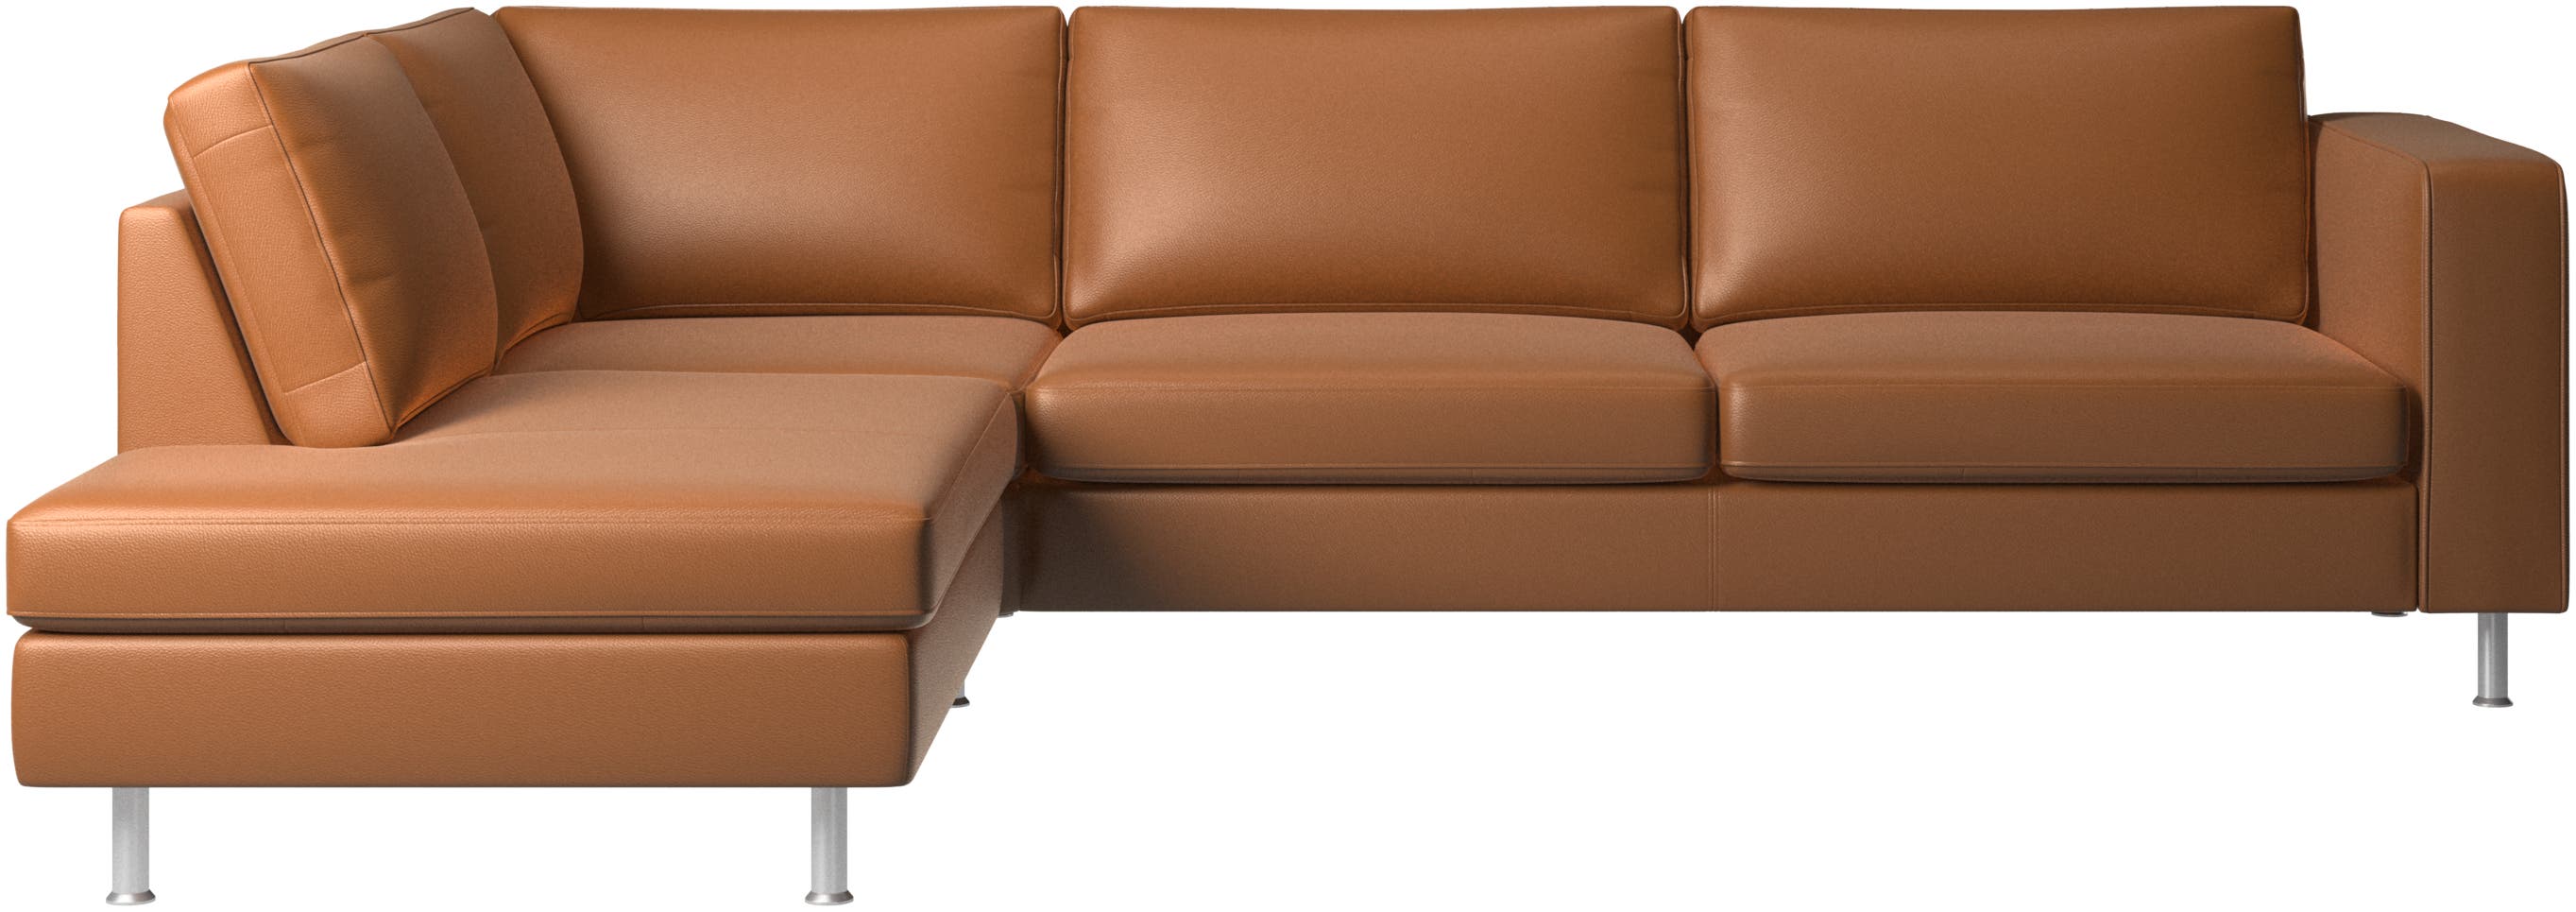 γωνιακός καναπές Indivi με μονάδα lounging